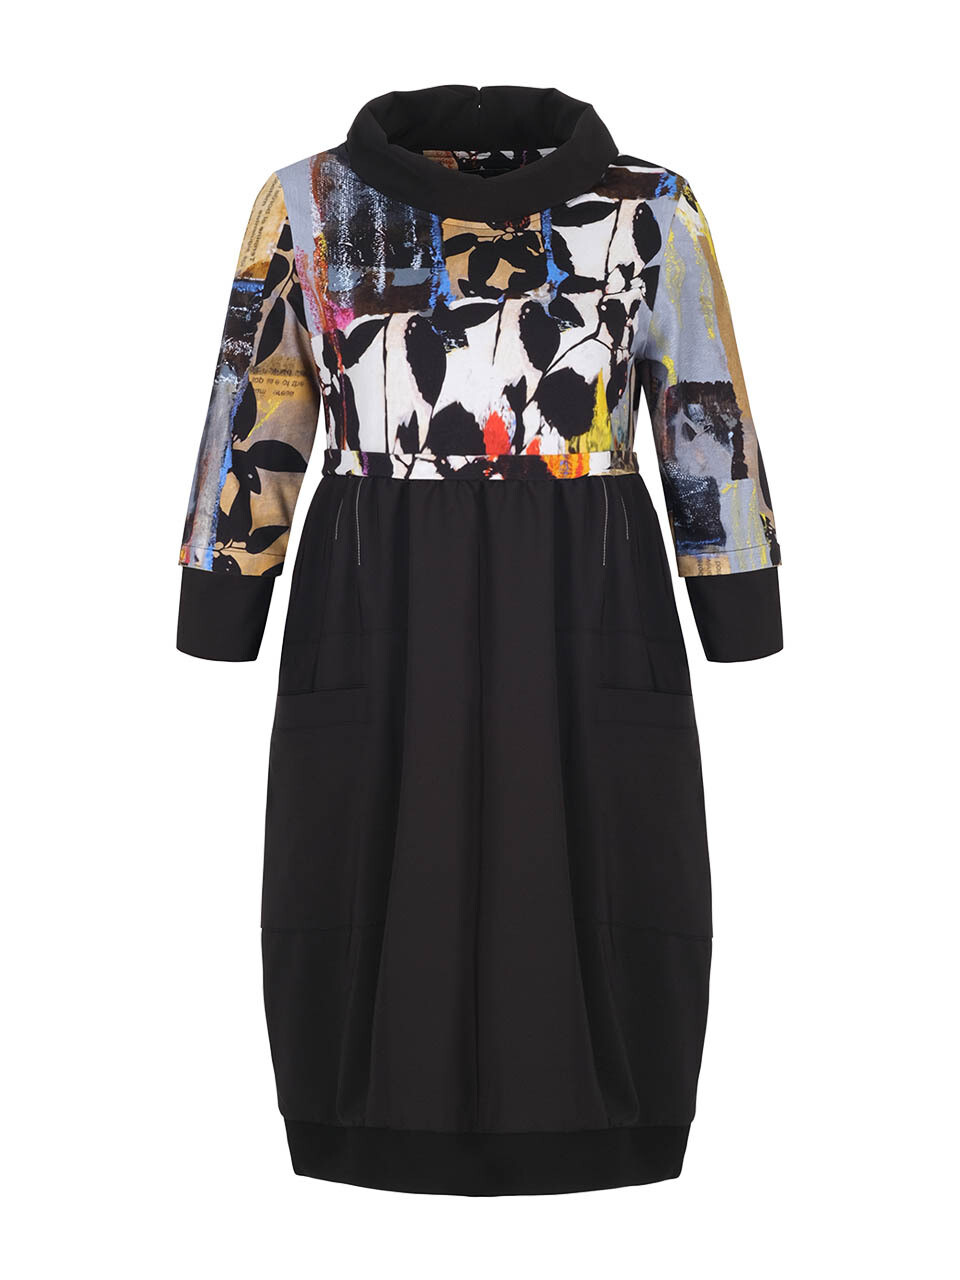 Simply Art Dolcezza: Mixed Media Double OO Abstract Art Midi Dress